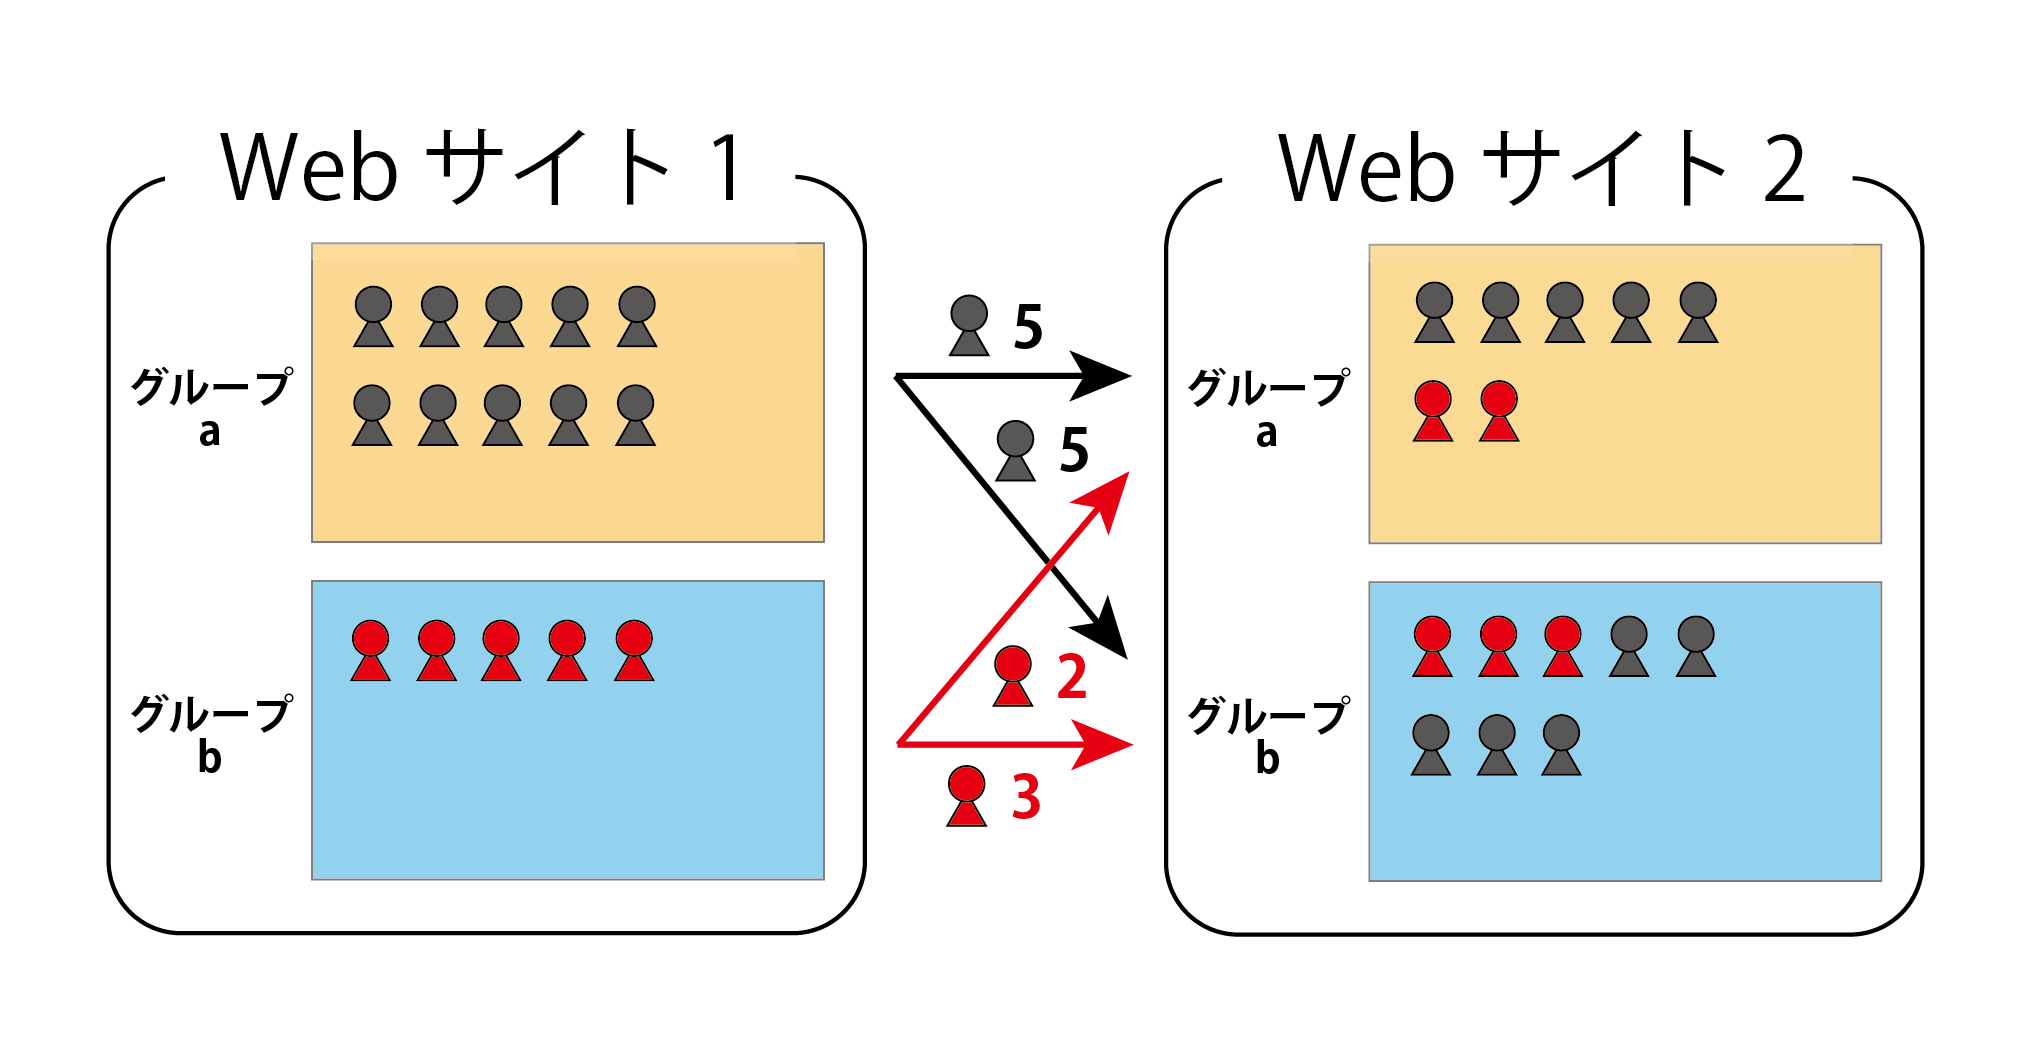 <dfn class="fig">図3</dfn>：<span class="qrinews-figure-title">Web サイト 1 から Web サイト 2 へ移動したユーザーと移動の前後に所属するグループの関係</span>　黒のユーザーは Web サイト 1 ではグループ a に所属しており、赤のユーザーは Web サイト 1 ではグループ b に所属している。